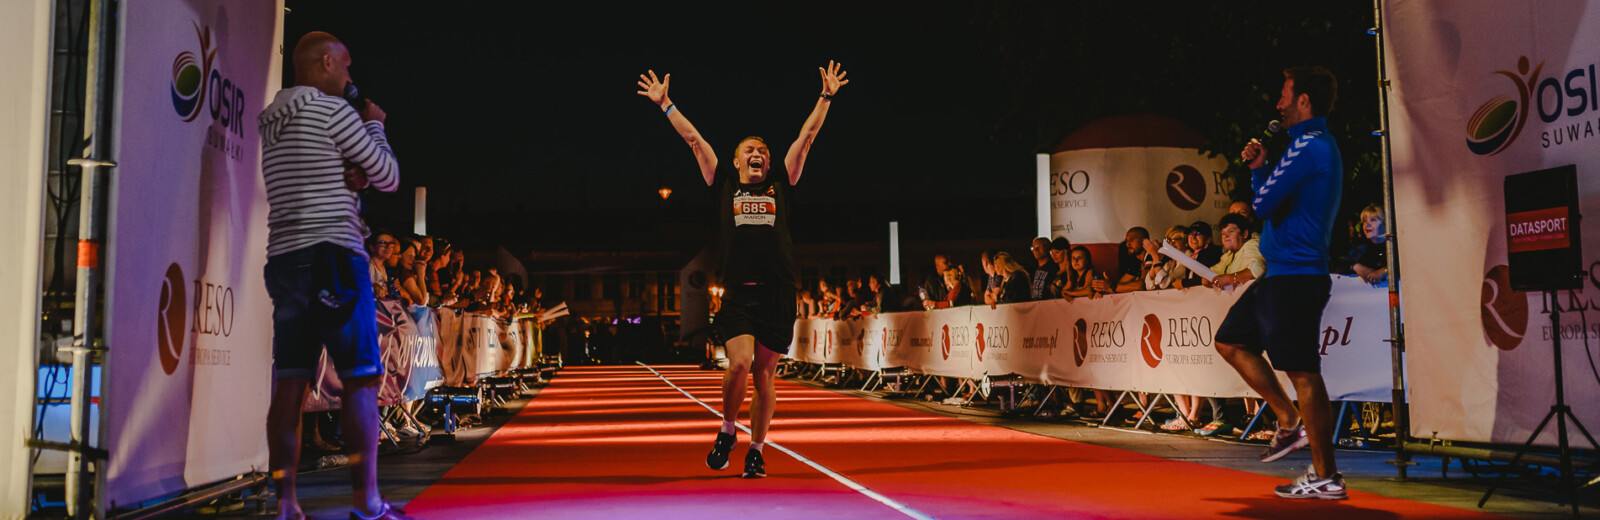 RESO Suwałki Półmaraton - biegacz na czerwonym dywanie